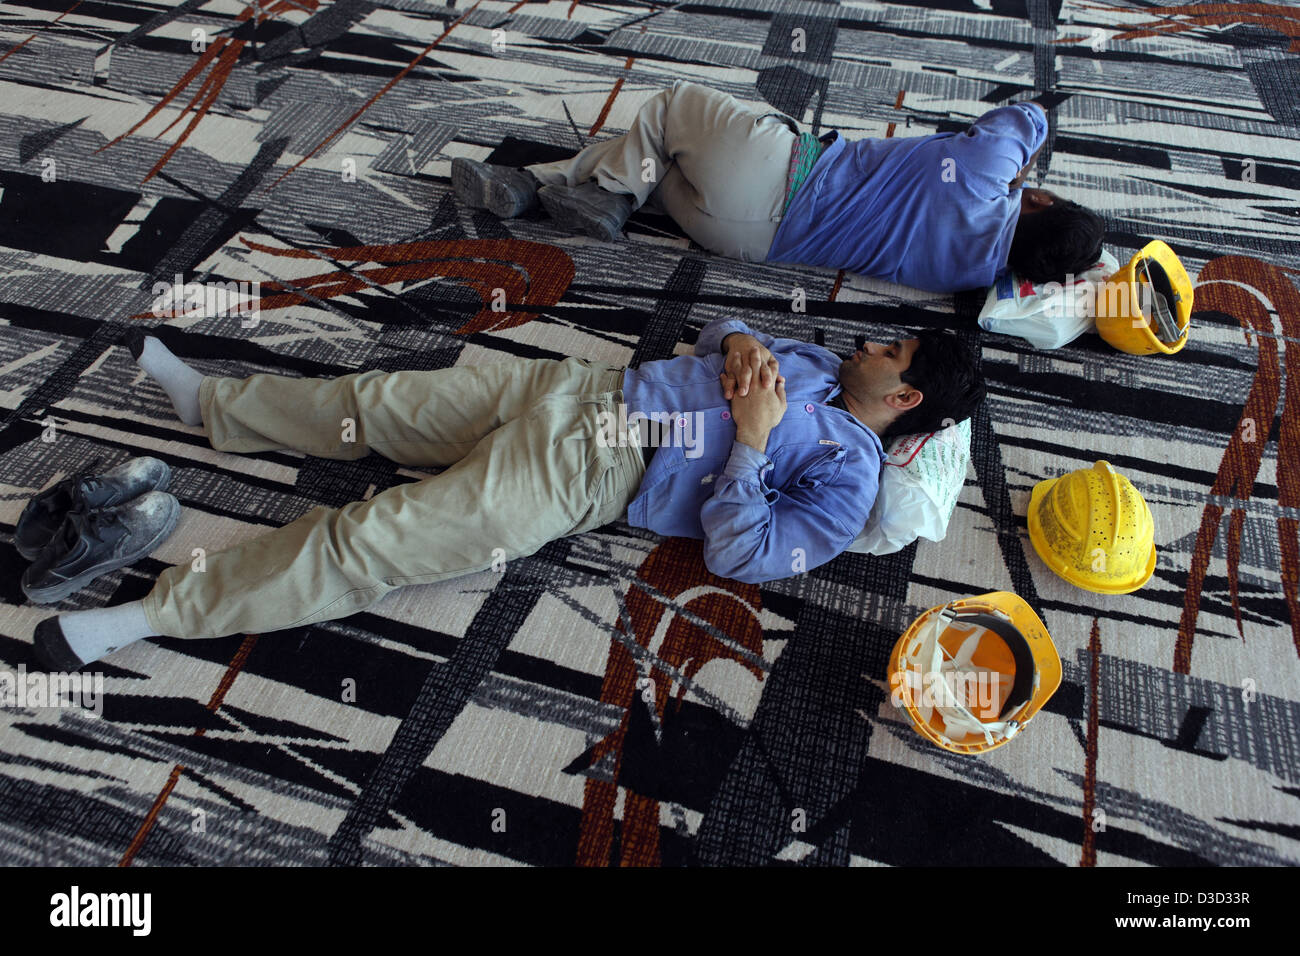 Dubaï, Émirats Arabes Unis, les travailleurs de la construction de dormir dans leur rupture sur le plancher Banque D'Images